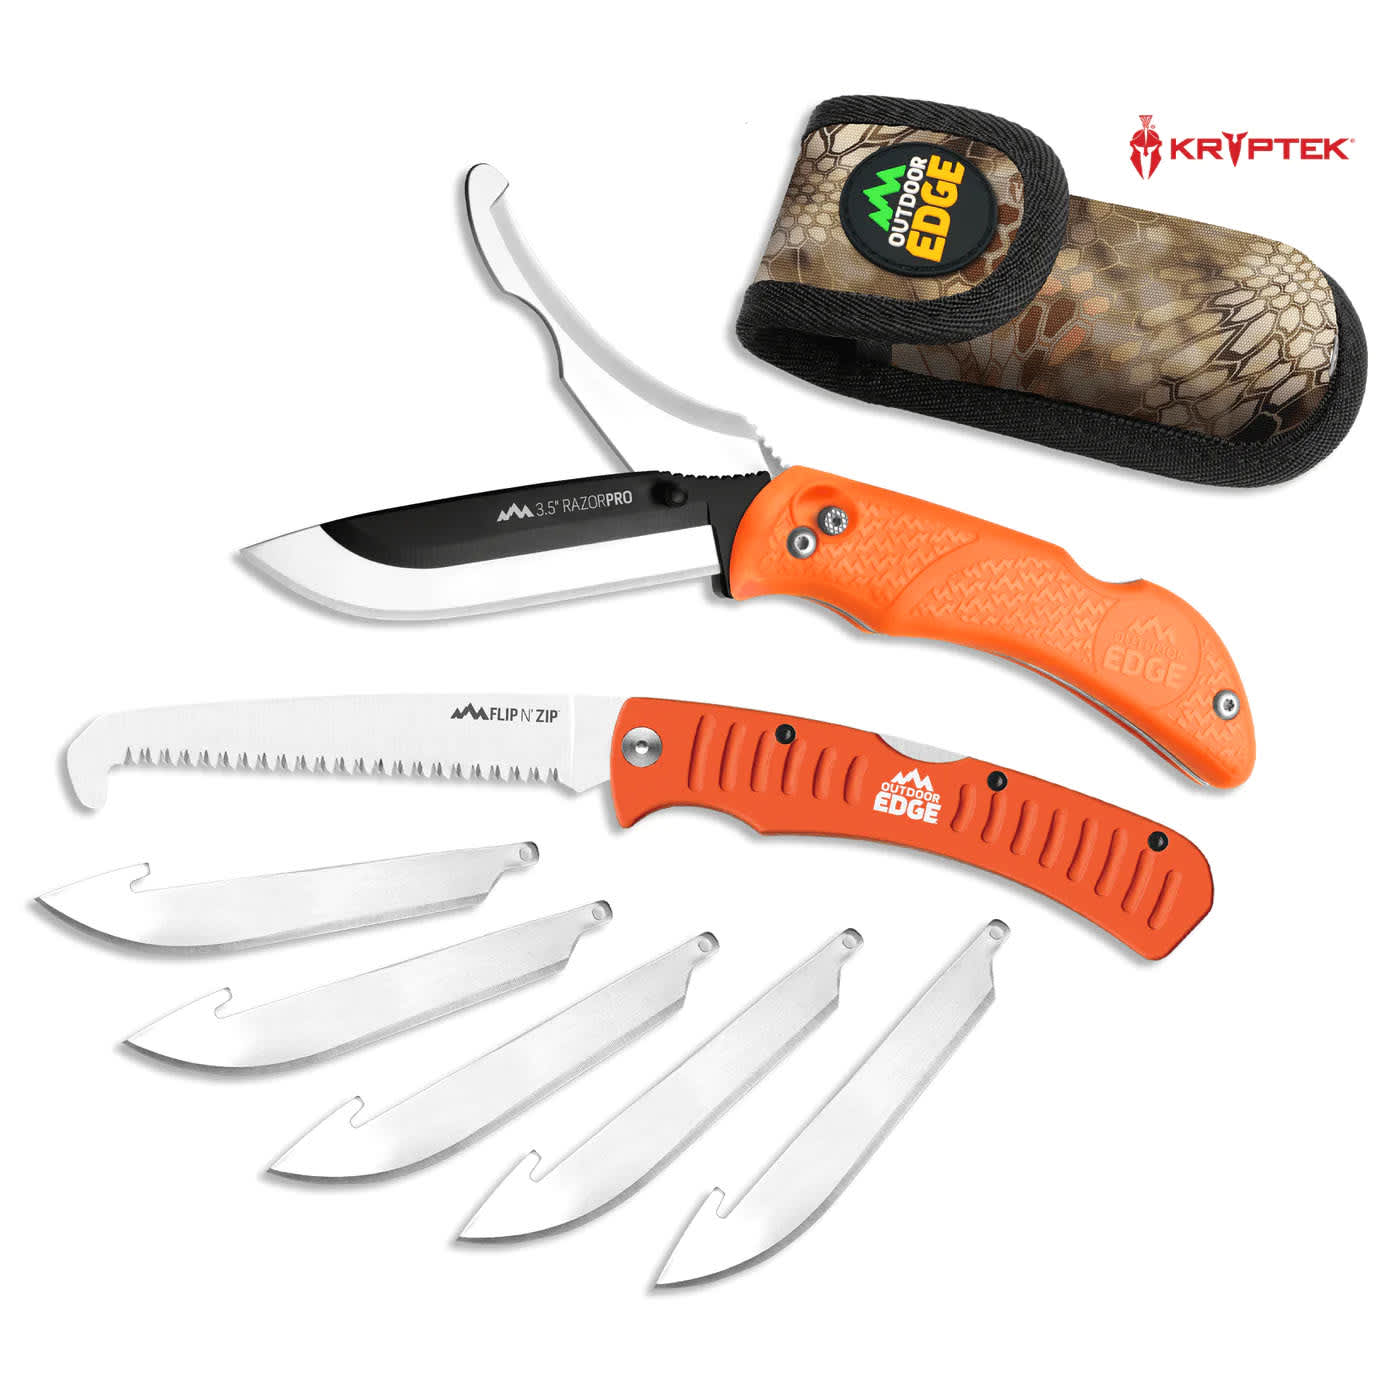 Outdoor Edge® Razor-Pro™ Knife/Saw Folding Knife Combo